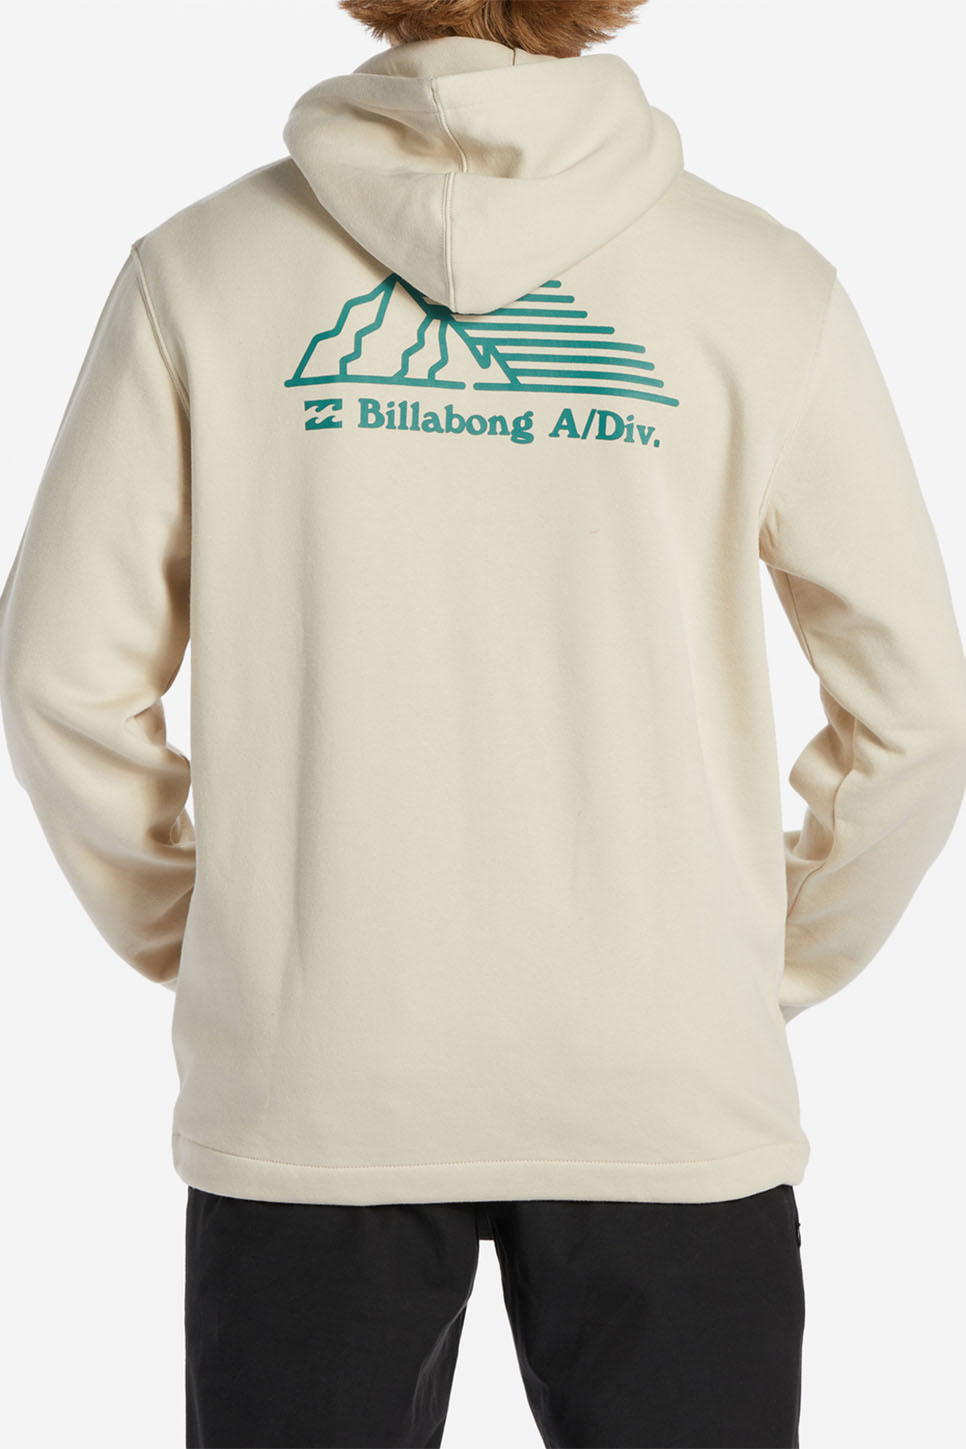 Billabong - Compass Pullover - Chino - Back